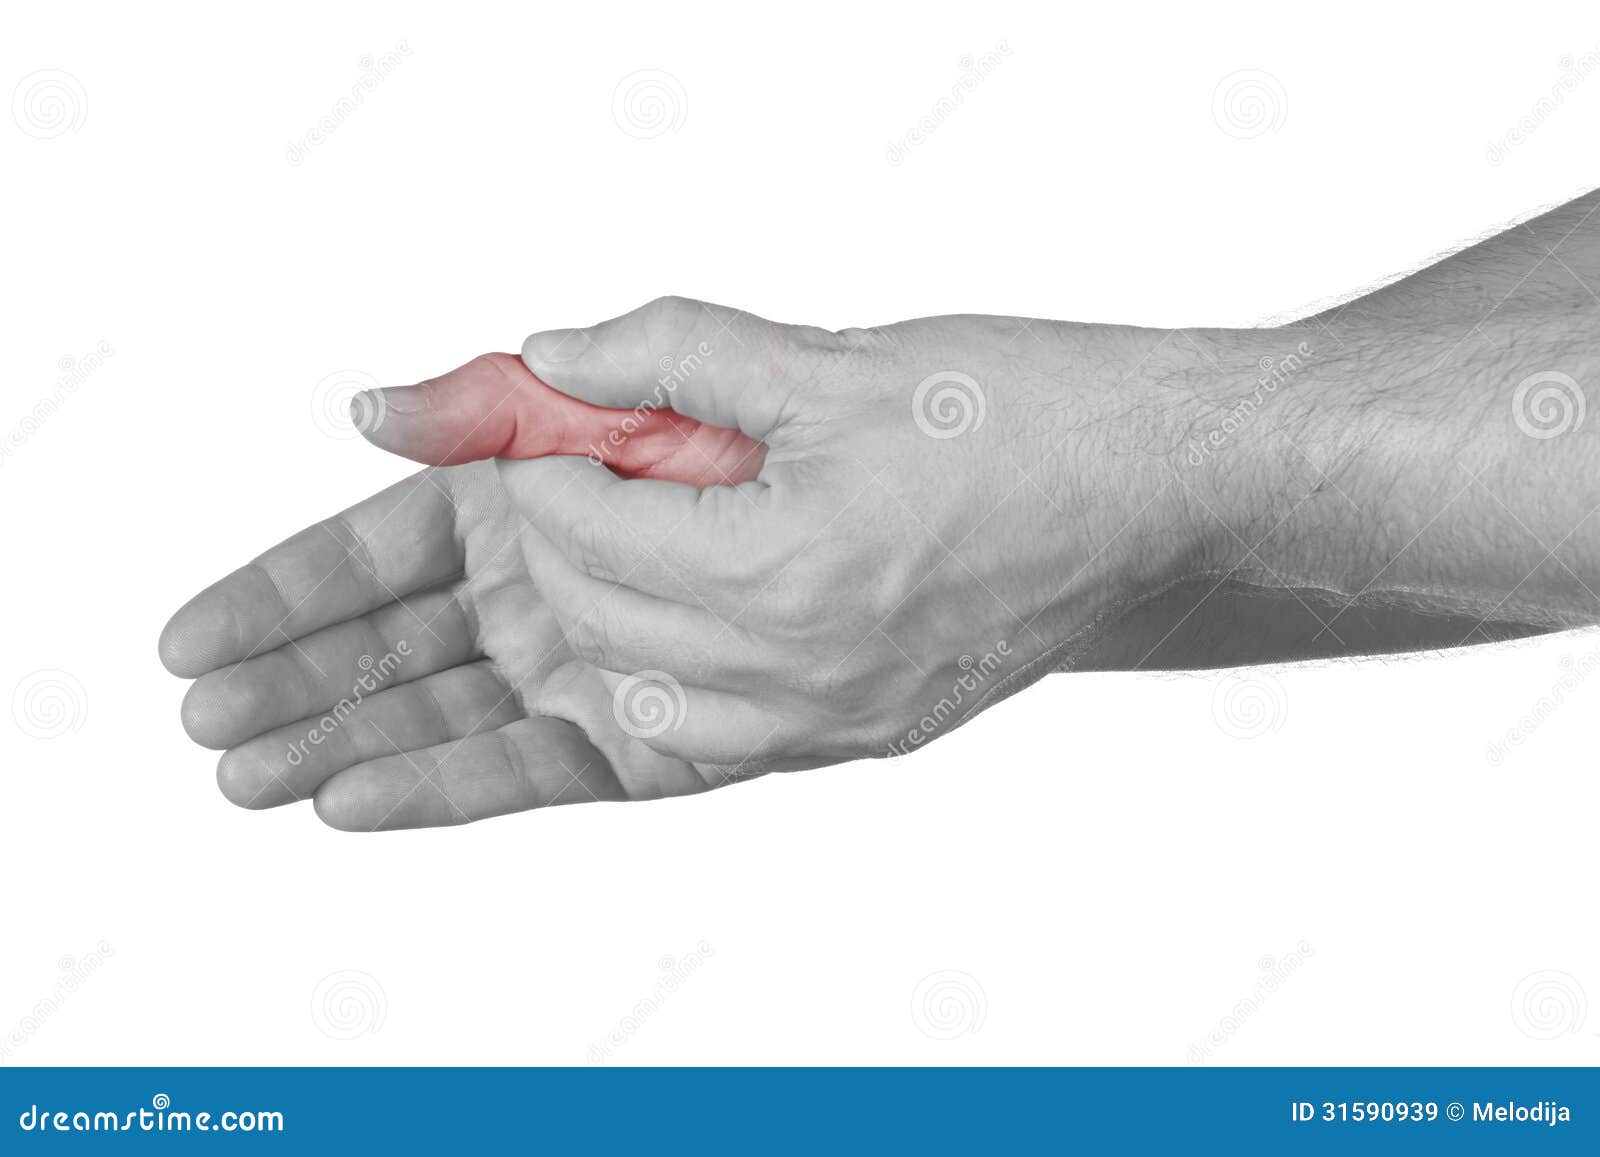 Болят большие пальцы на руках причины. Сустав большого пальца руки. Боль в суставе большого пальца руки. Болит сустав большого пальца на руке. Болит сустав Болшево пальца на руке.